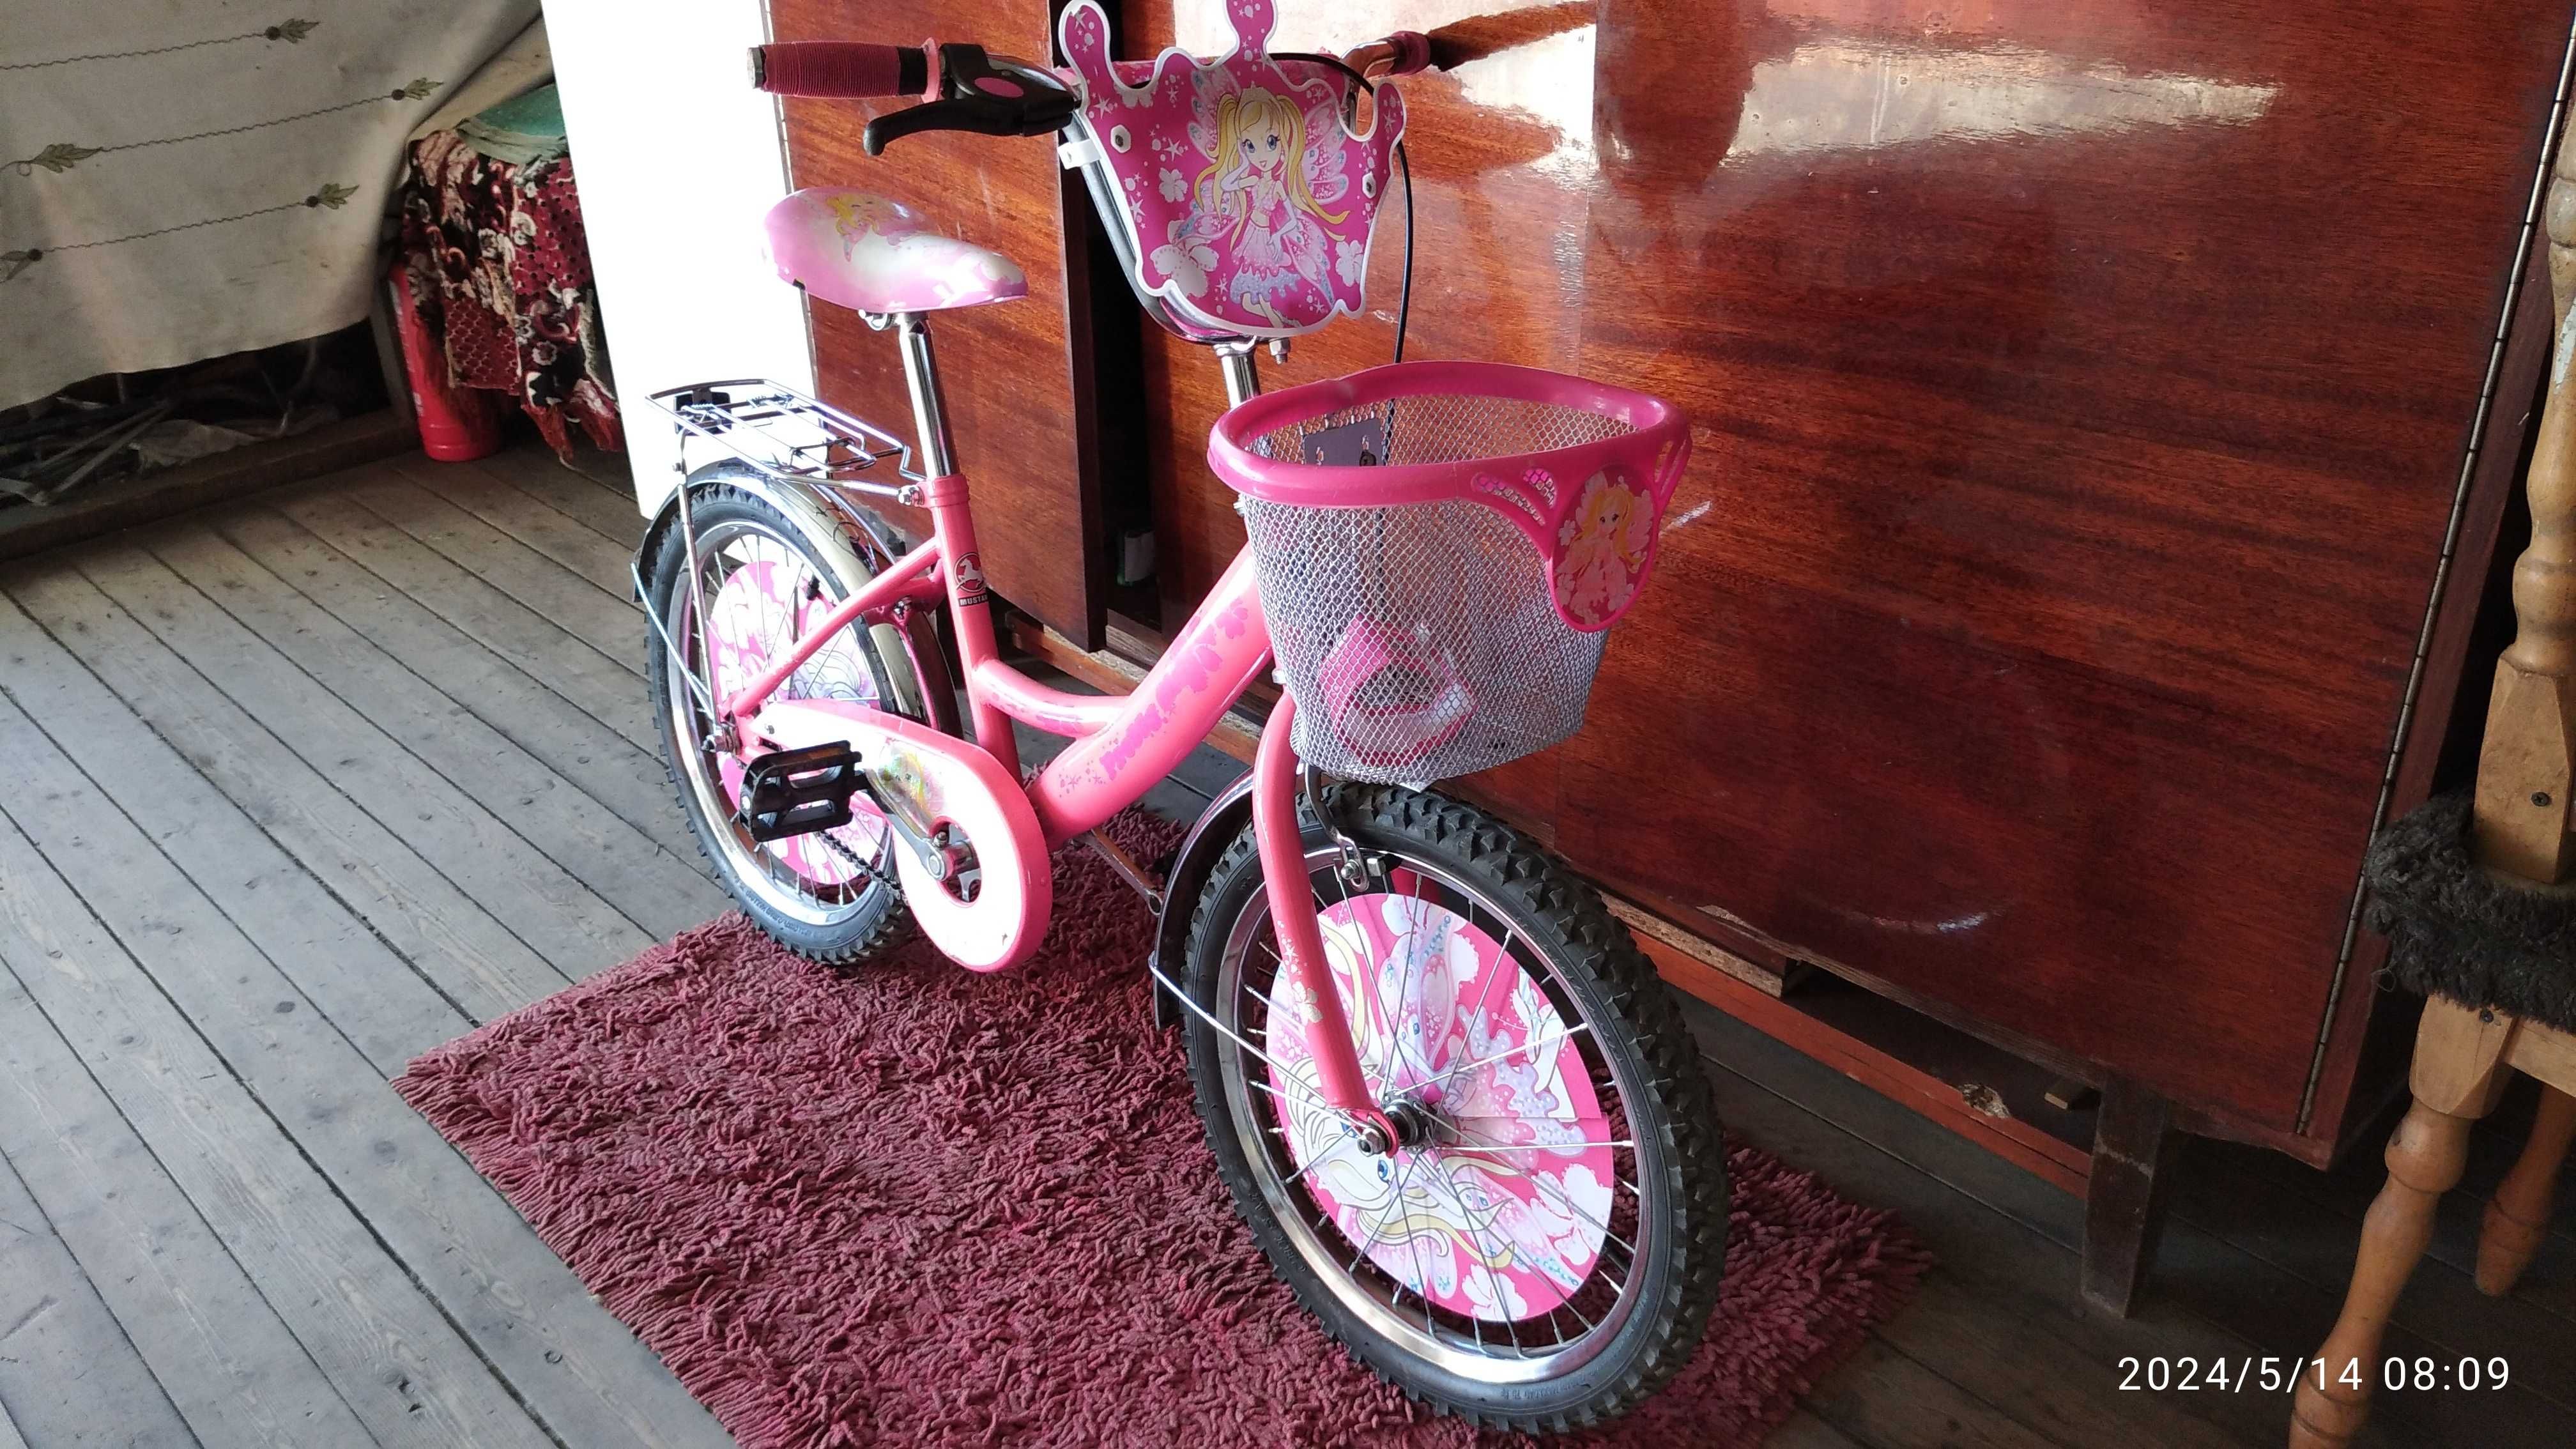 Велосипед для дівчинки Mustang ( принцеса). 5-8 років